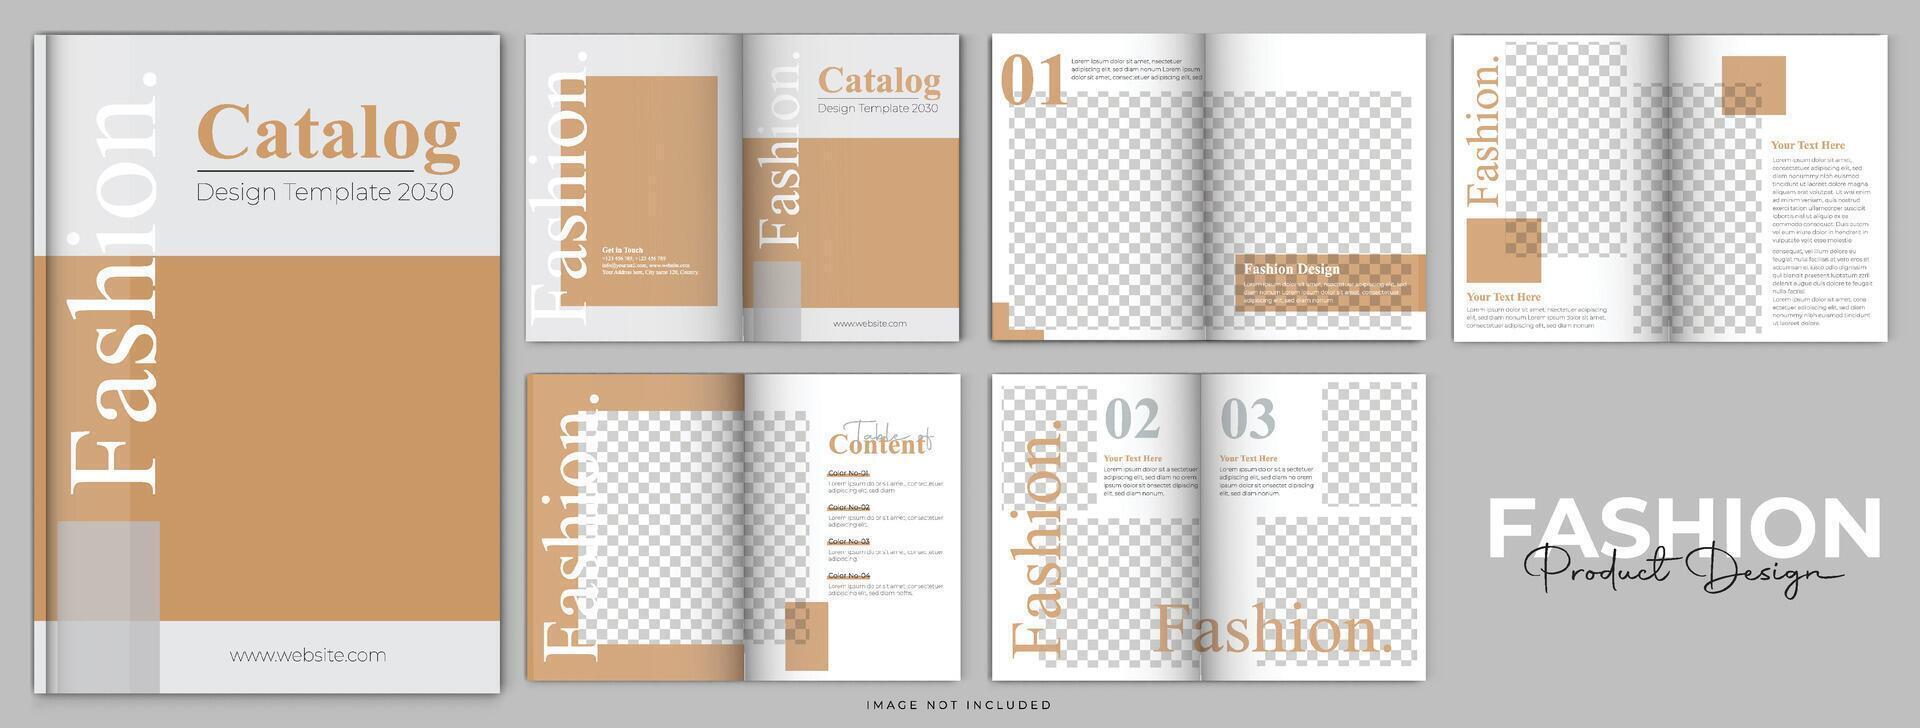 bedrijfsprofiel brochure sjabloon of bedrijfsbrochure ontwerpsjabloon met meerdere pagina's vector